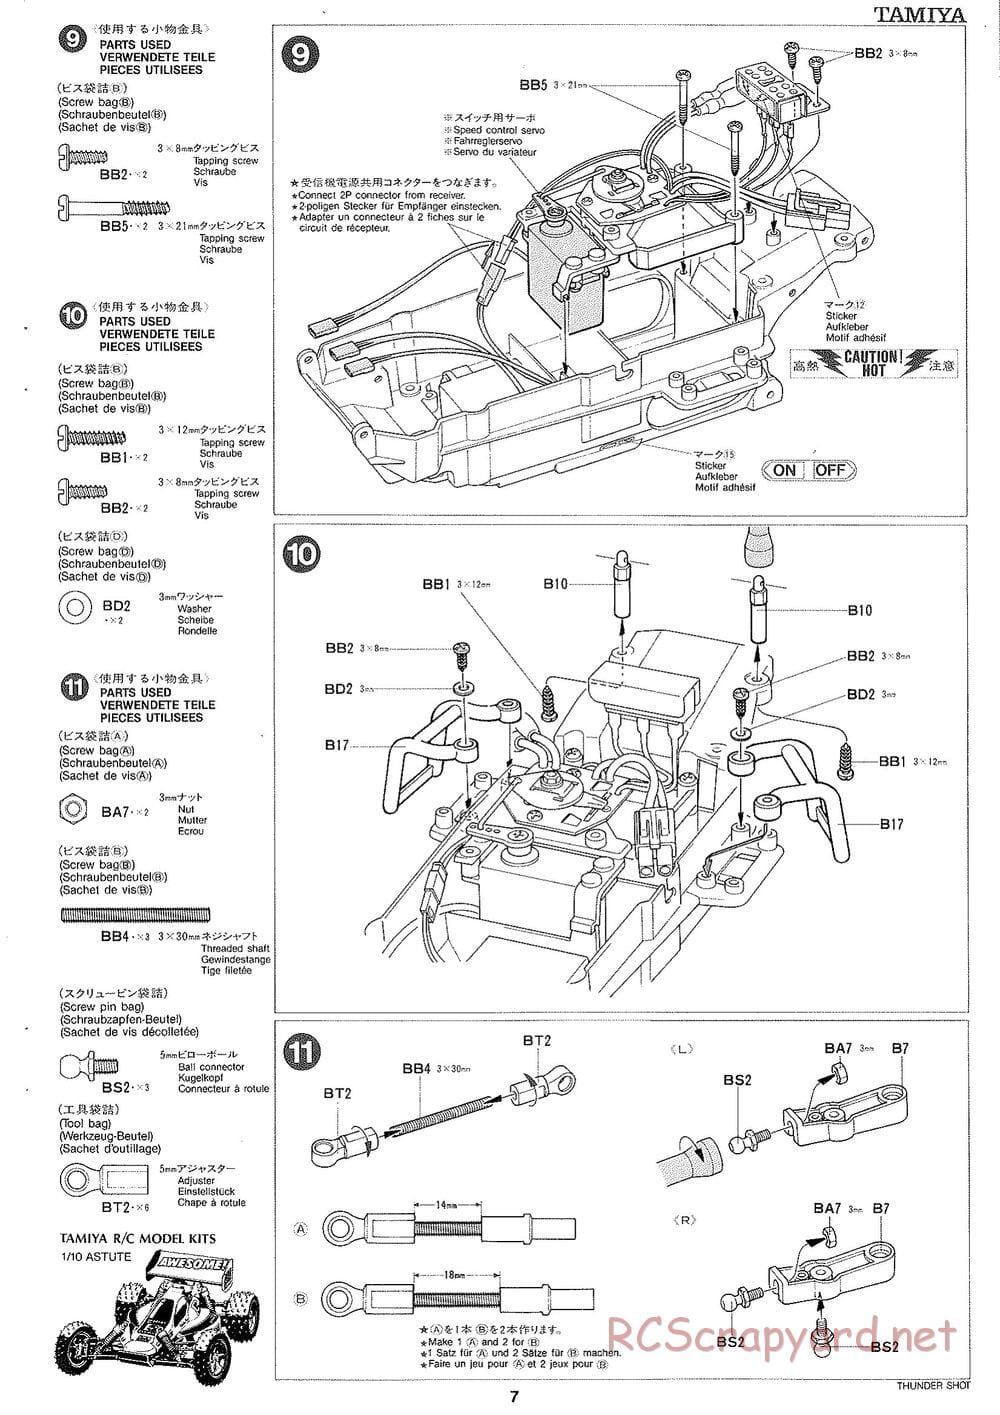 Tamiya - Thunder Shot - TS1 Chassis - Manual - Page 8